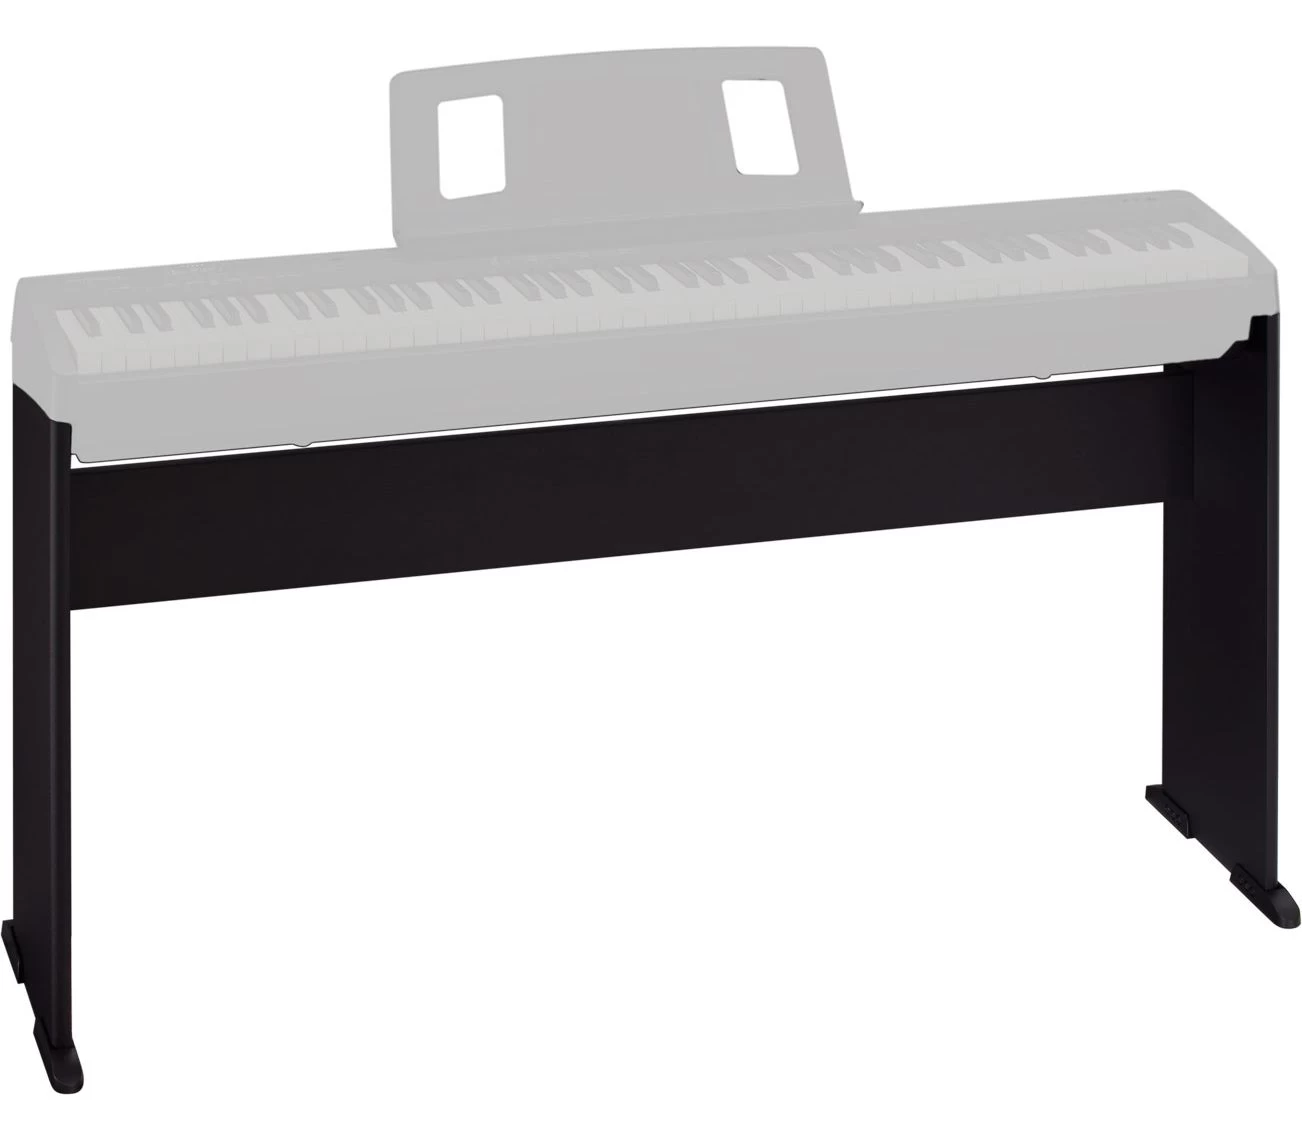 Lut-C-46B Стойка для цифрового пианино Casio CDP-S100/S110, CDP-S150, CDP-S350, черная, Lutner